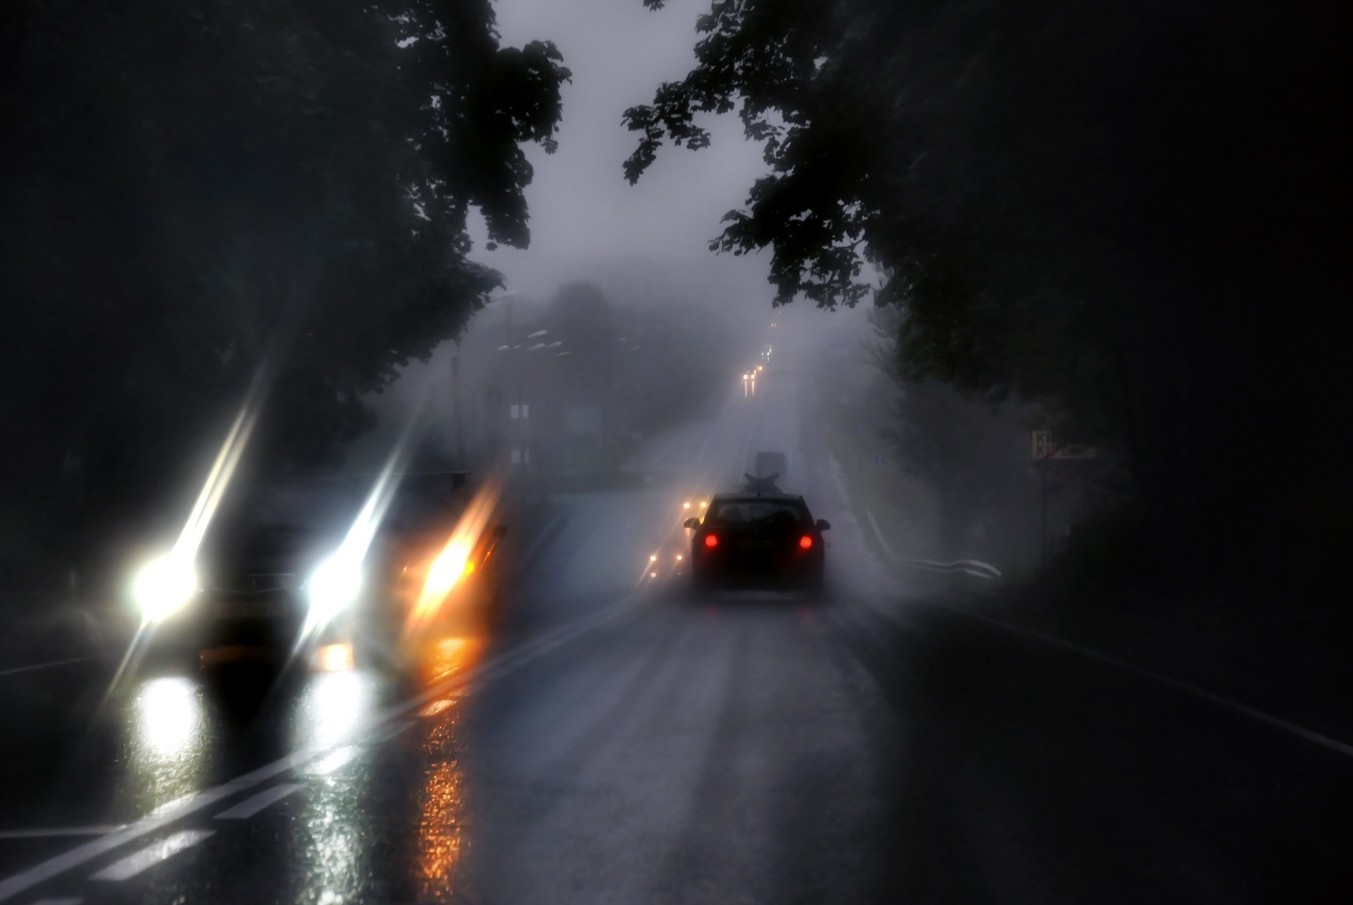 Дождь переехал. Машина в тумане. Плохая видимость на дороге. Туман на трассе. Машина едет в тумане.